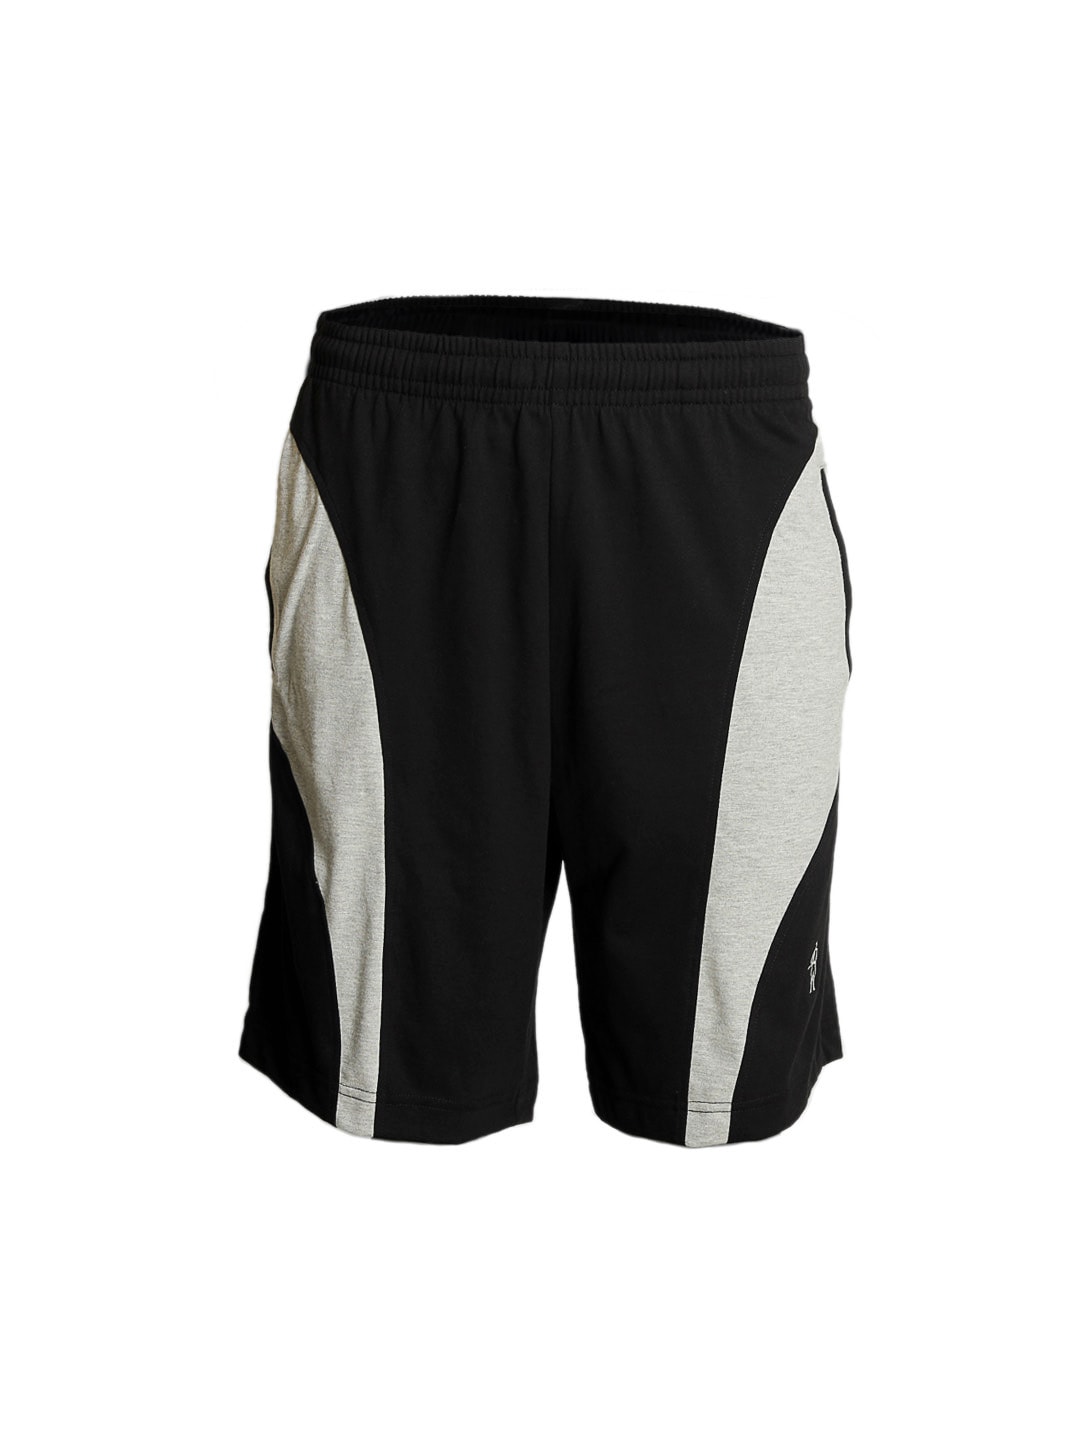 Jockey SPORT Men Black Knit Sport Shorts 9411